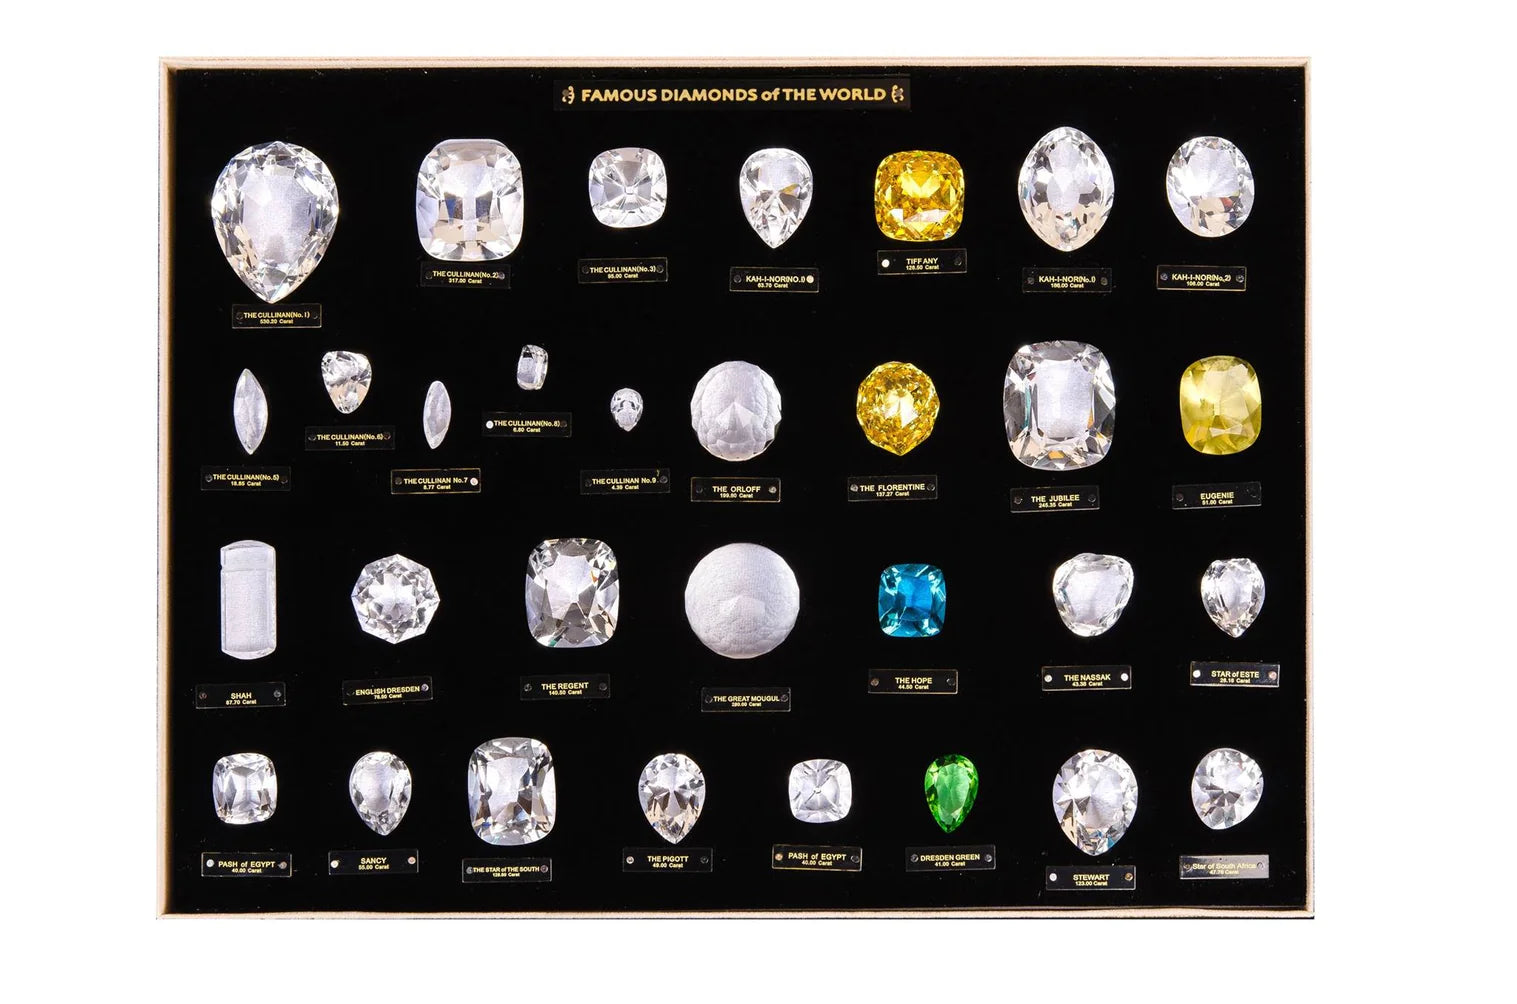 Ekskluzivna zbirka replik znanih diamantov na svetu: znani diamanti sveta